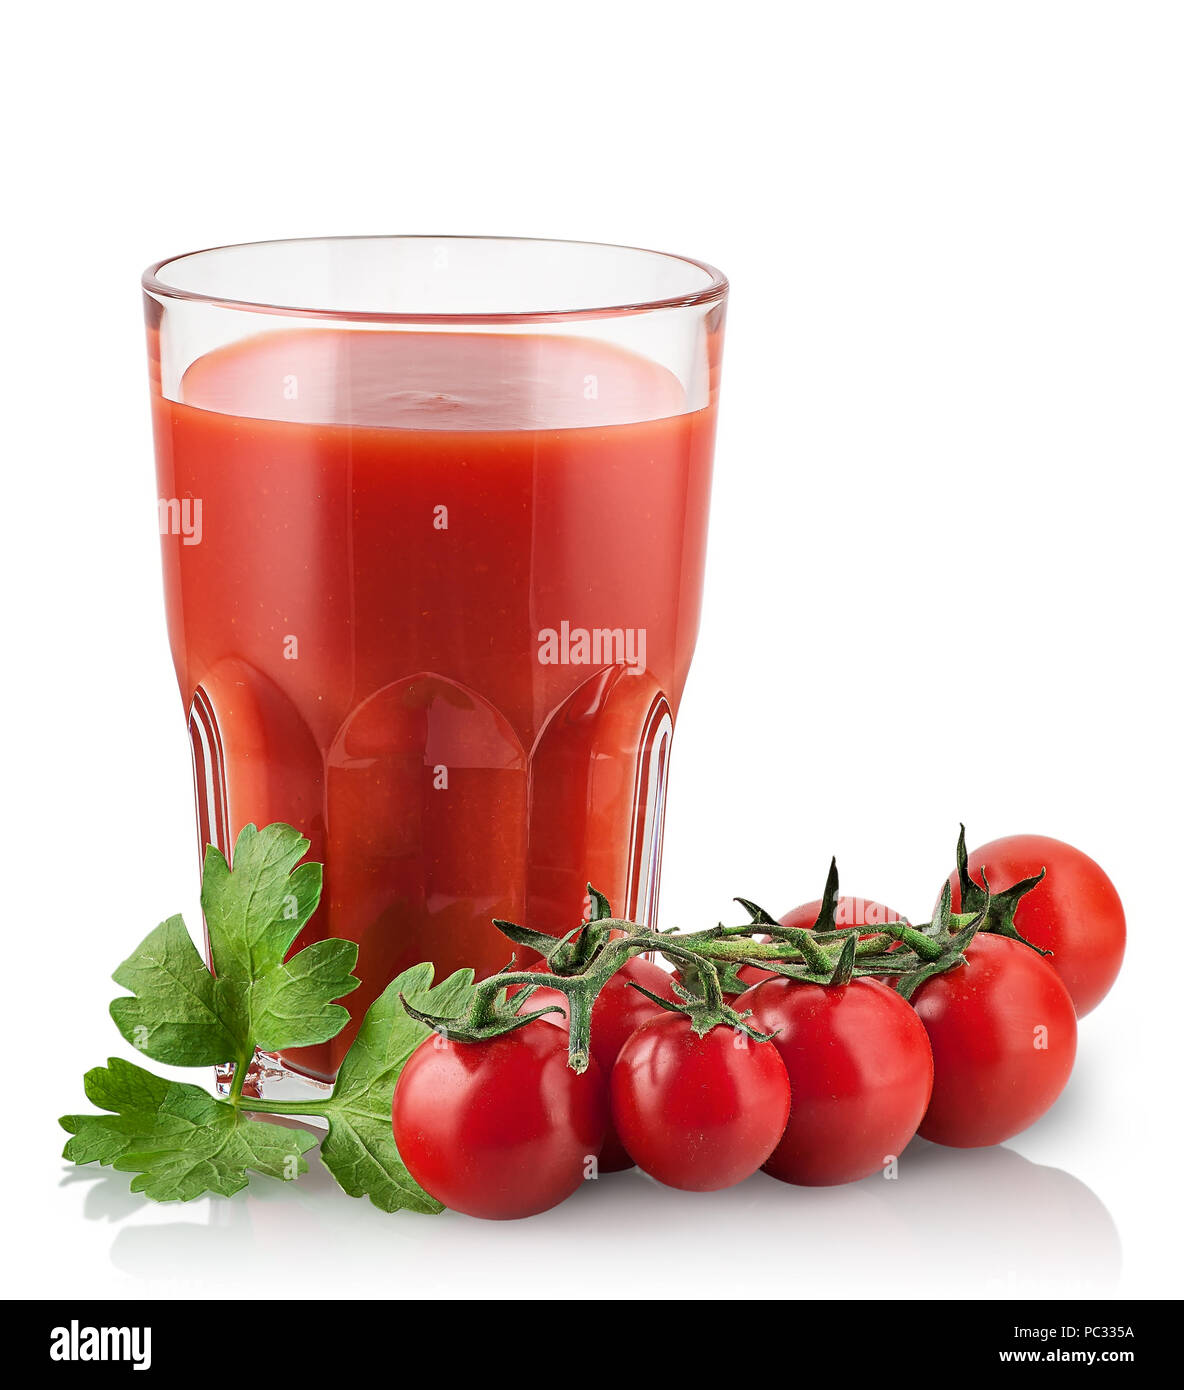 Cherry tomatoes with tomato juice Stock Photo